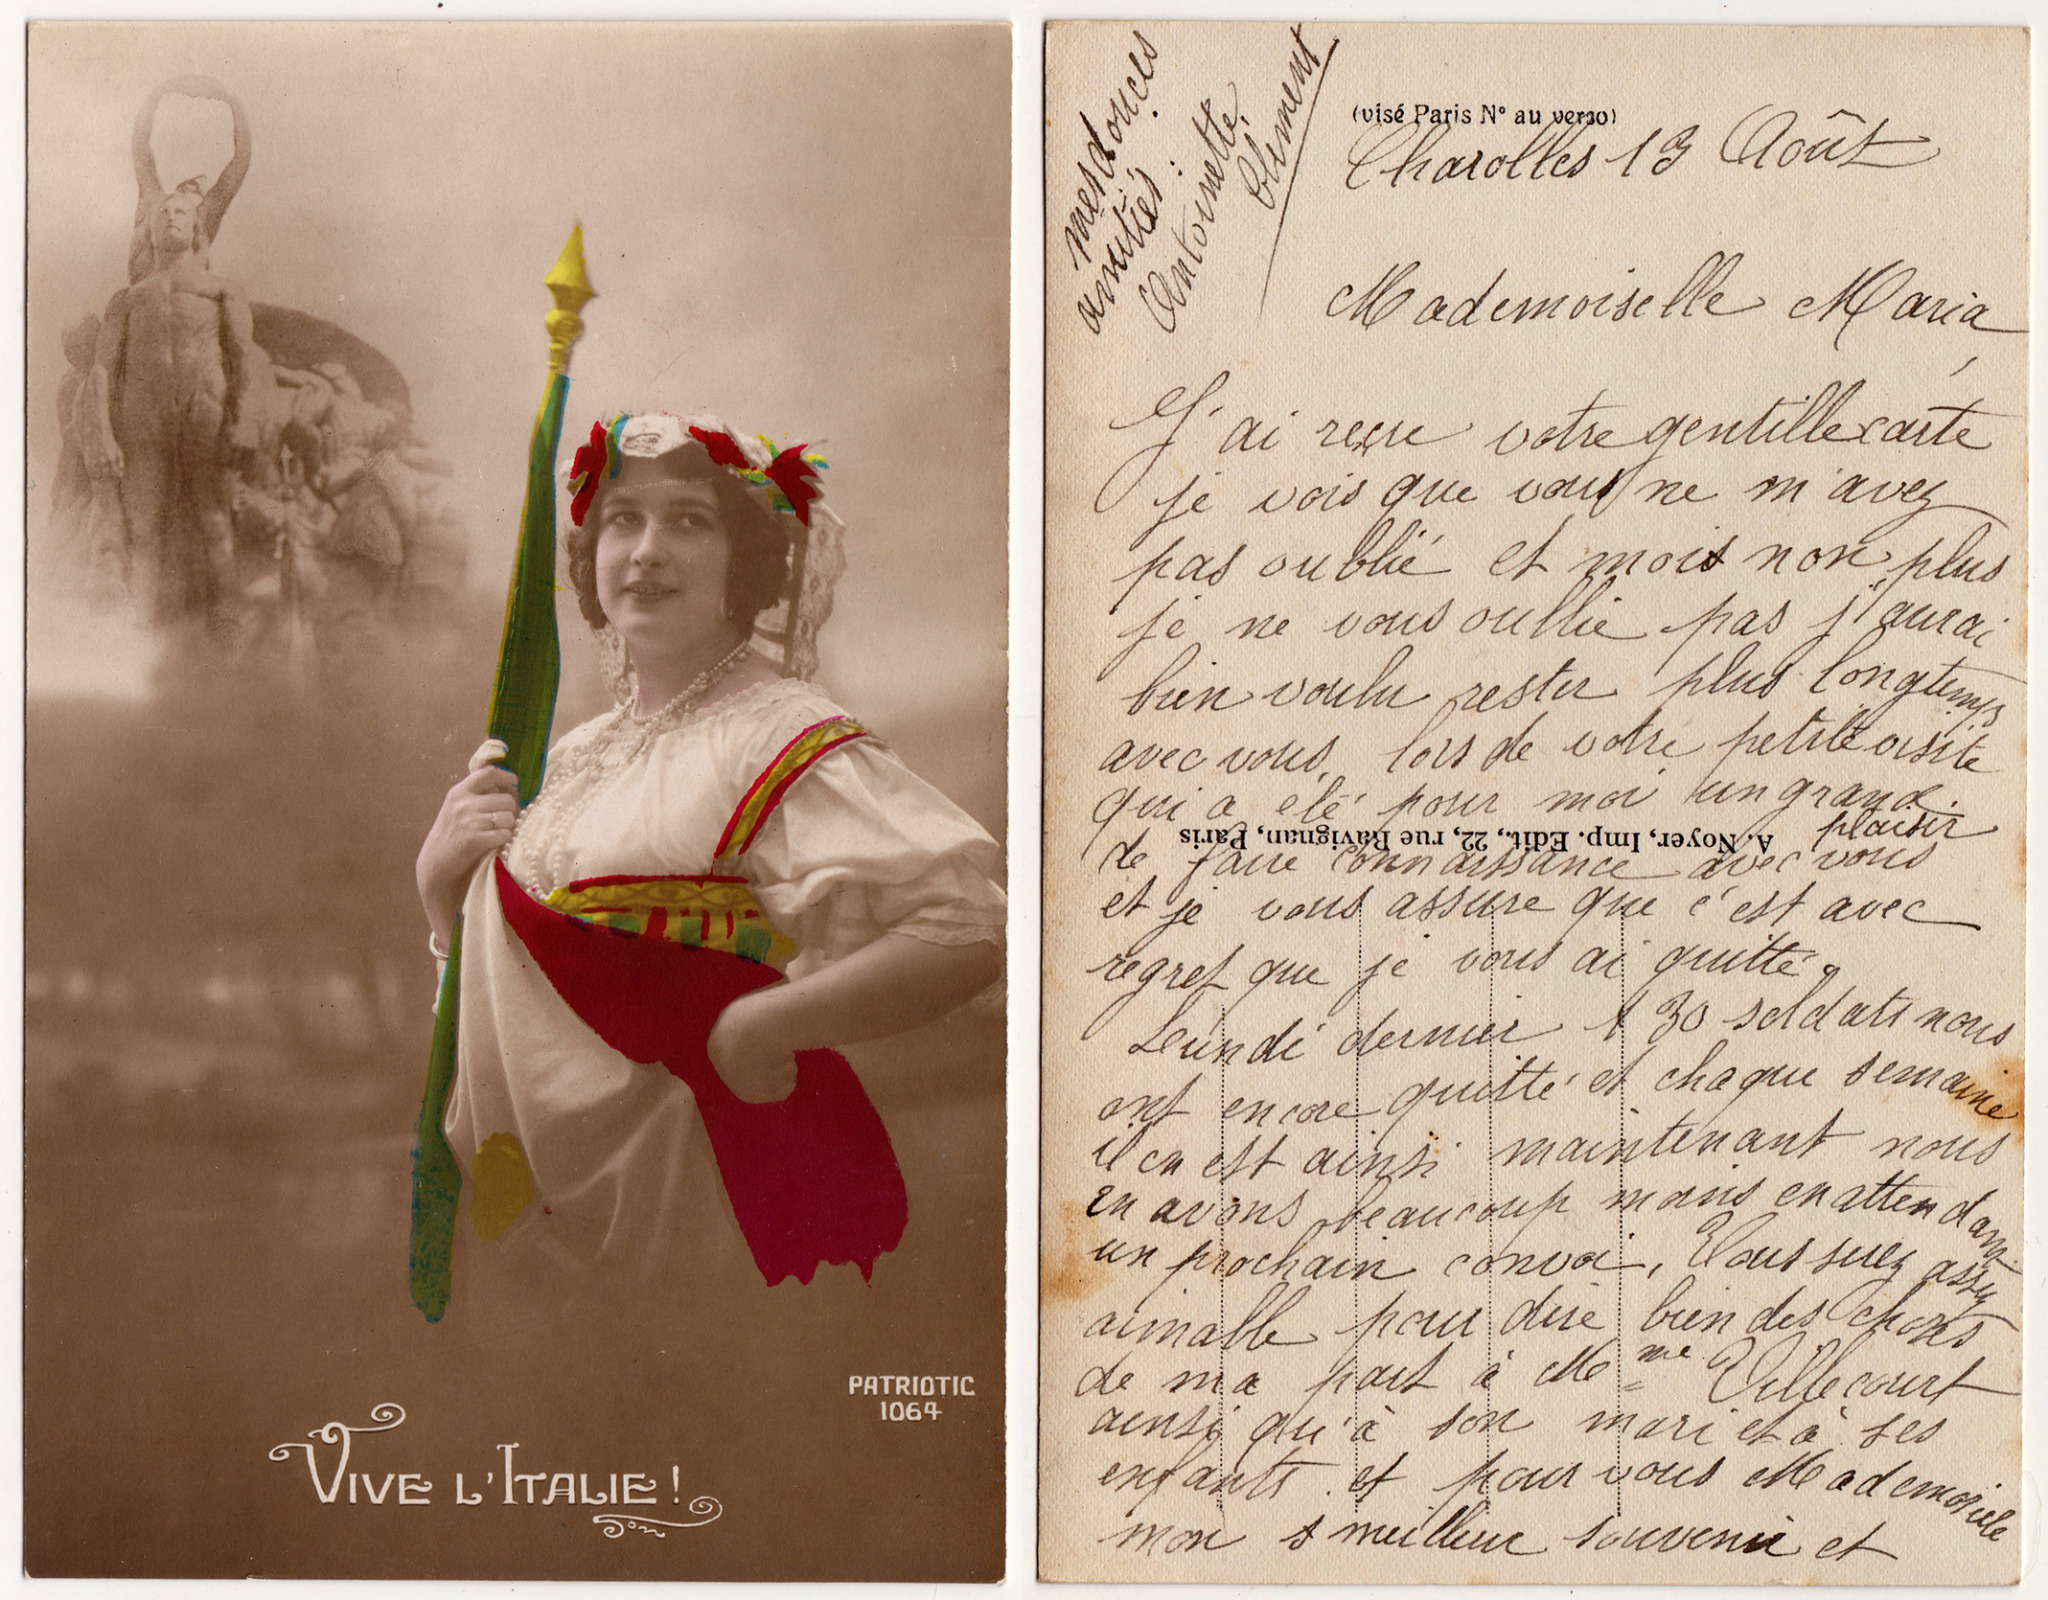 Cartes postales patriotiques françaises de la Grande Guerre - recensement - Page 3 Befc979b2b589d1c0b637a48a54cb27263780434